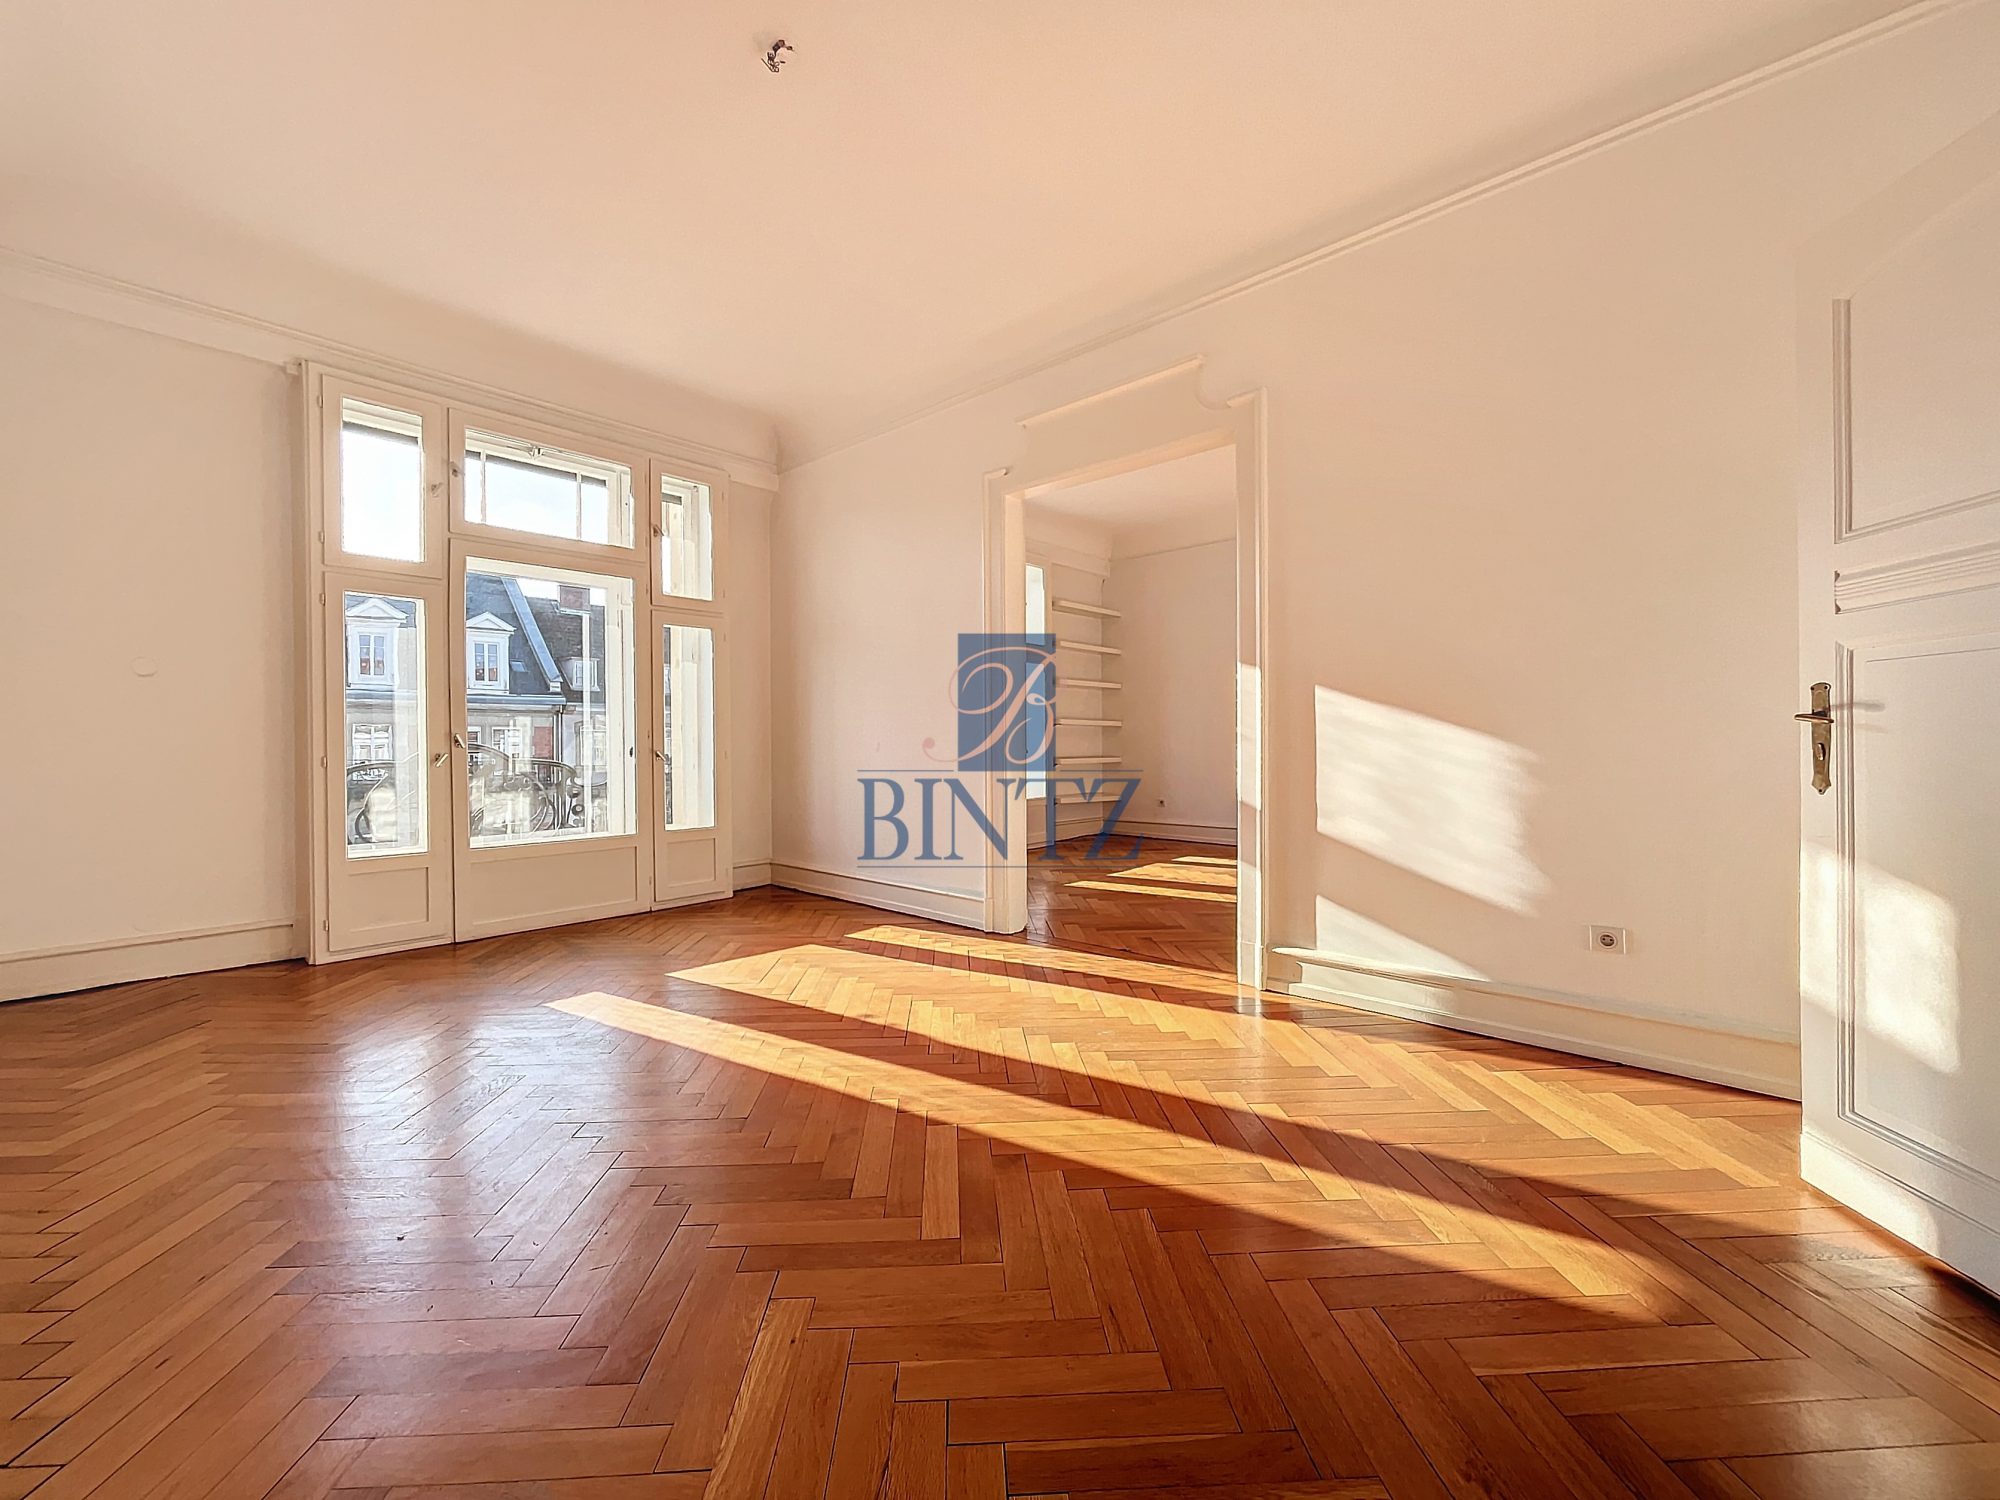 Exceptionnel 5 pièces avec balcon - location appartement Strasbourg - Bintz Immobilier - 8